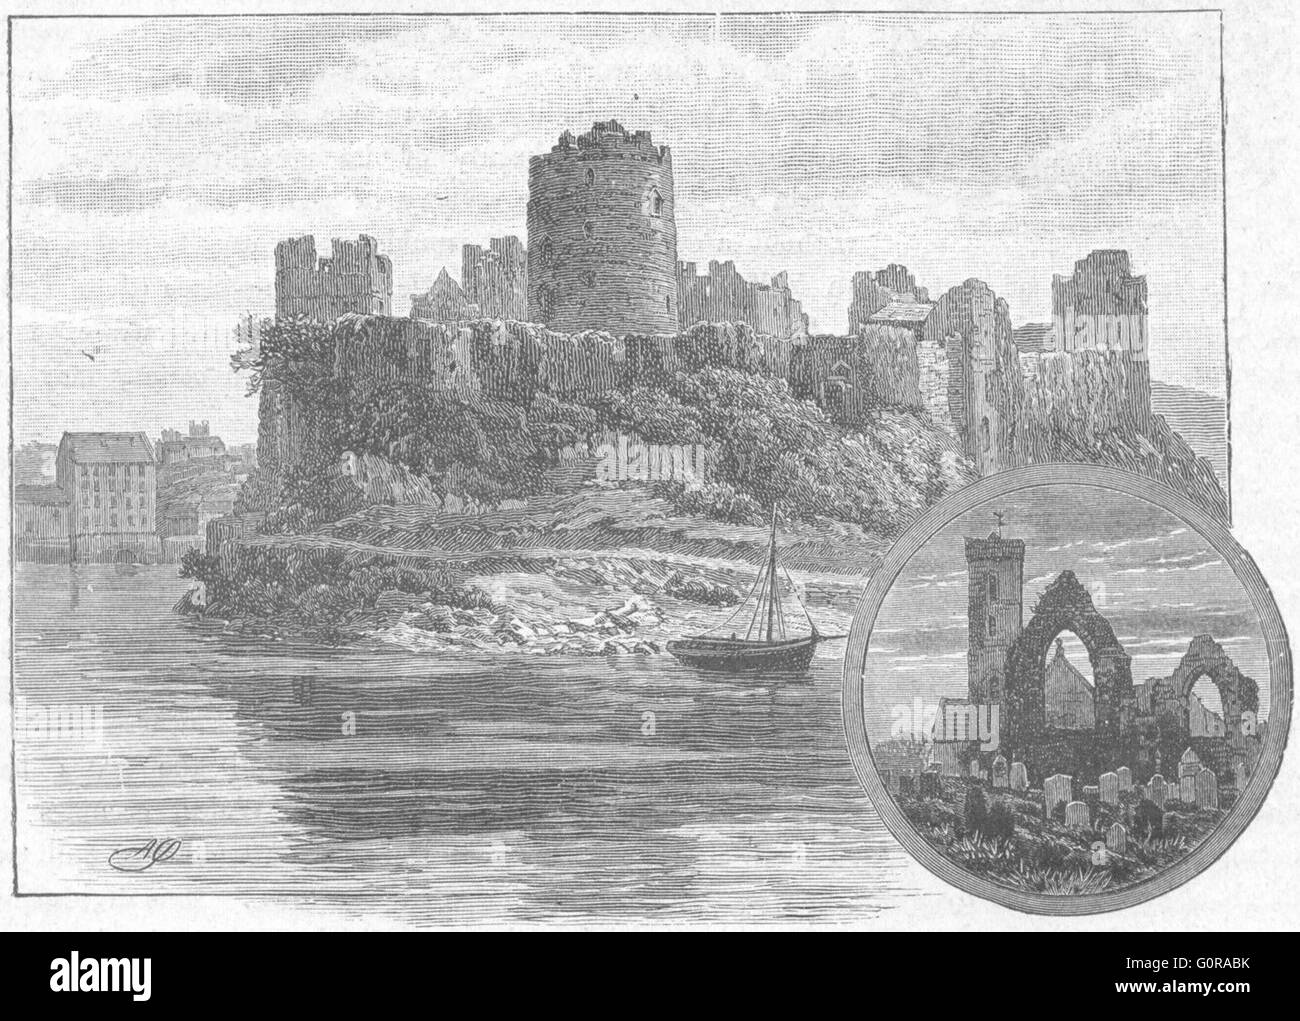 PEMBROKE: S shire: Pembroke Castle; Mouncton Priory, antique print 1898 Stock Photo